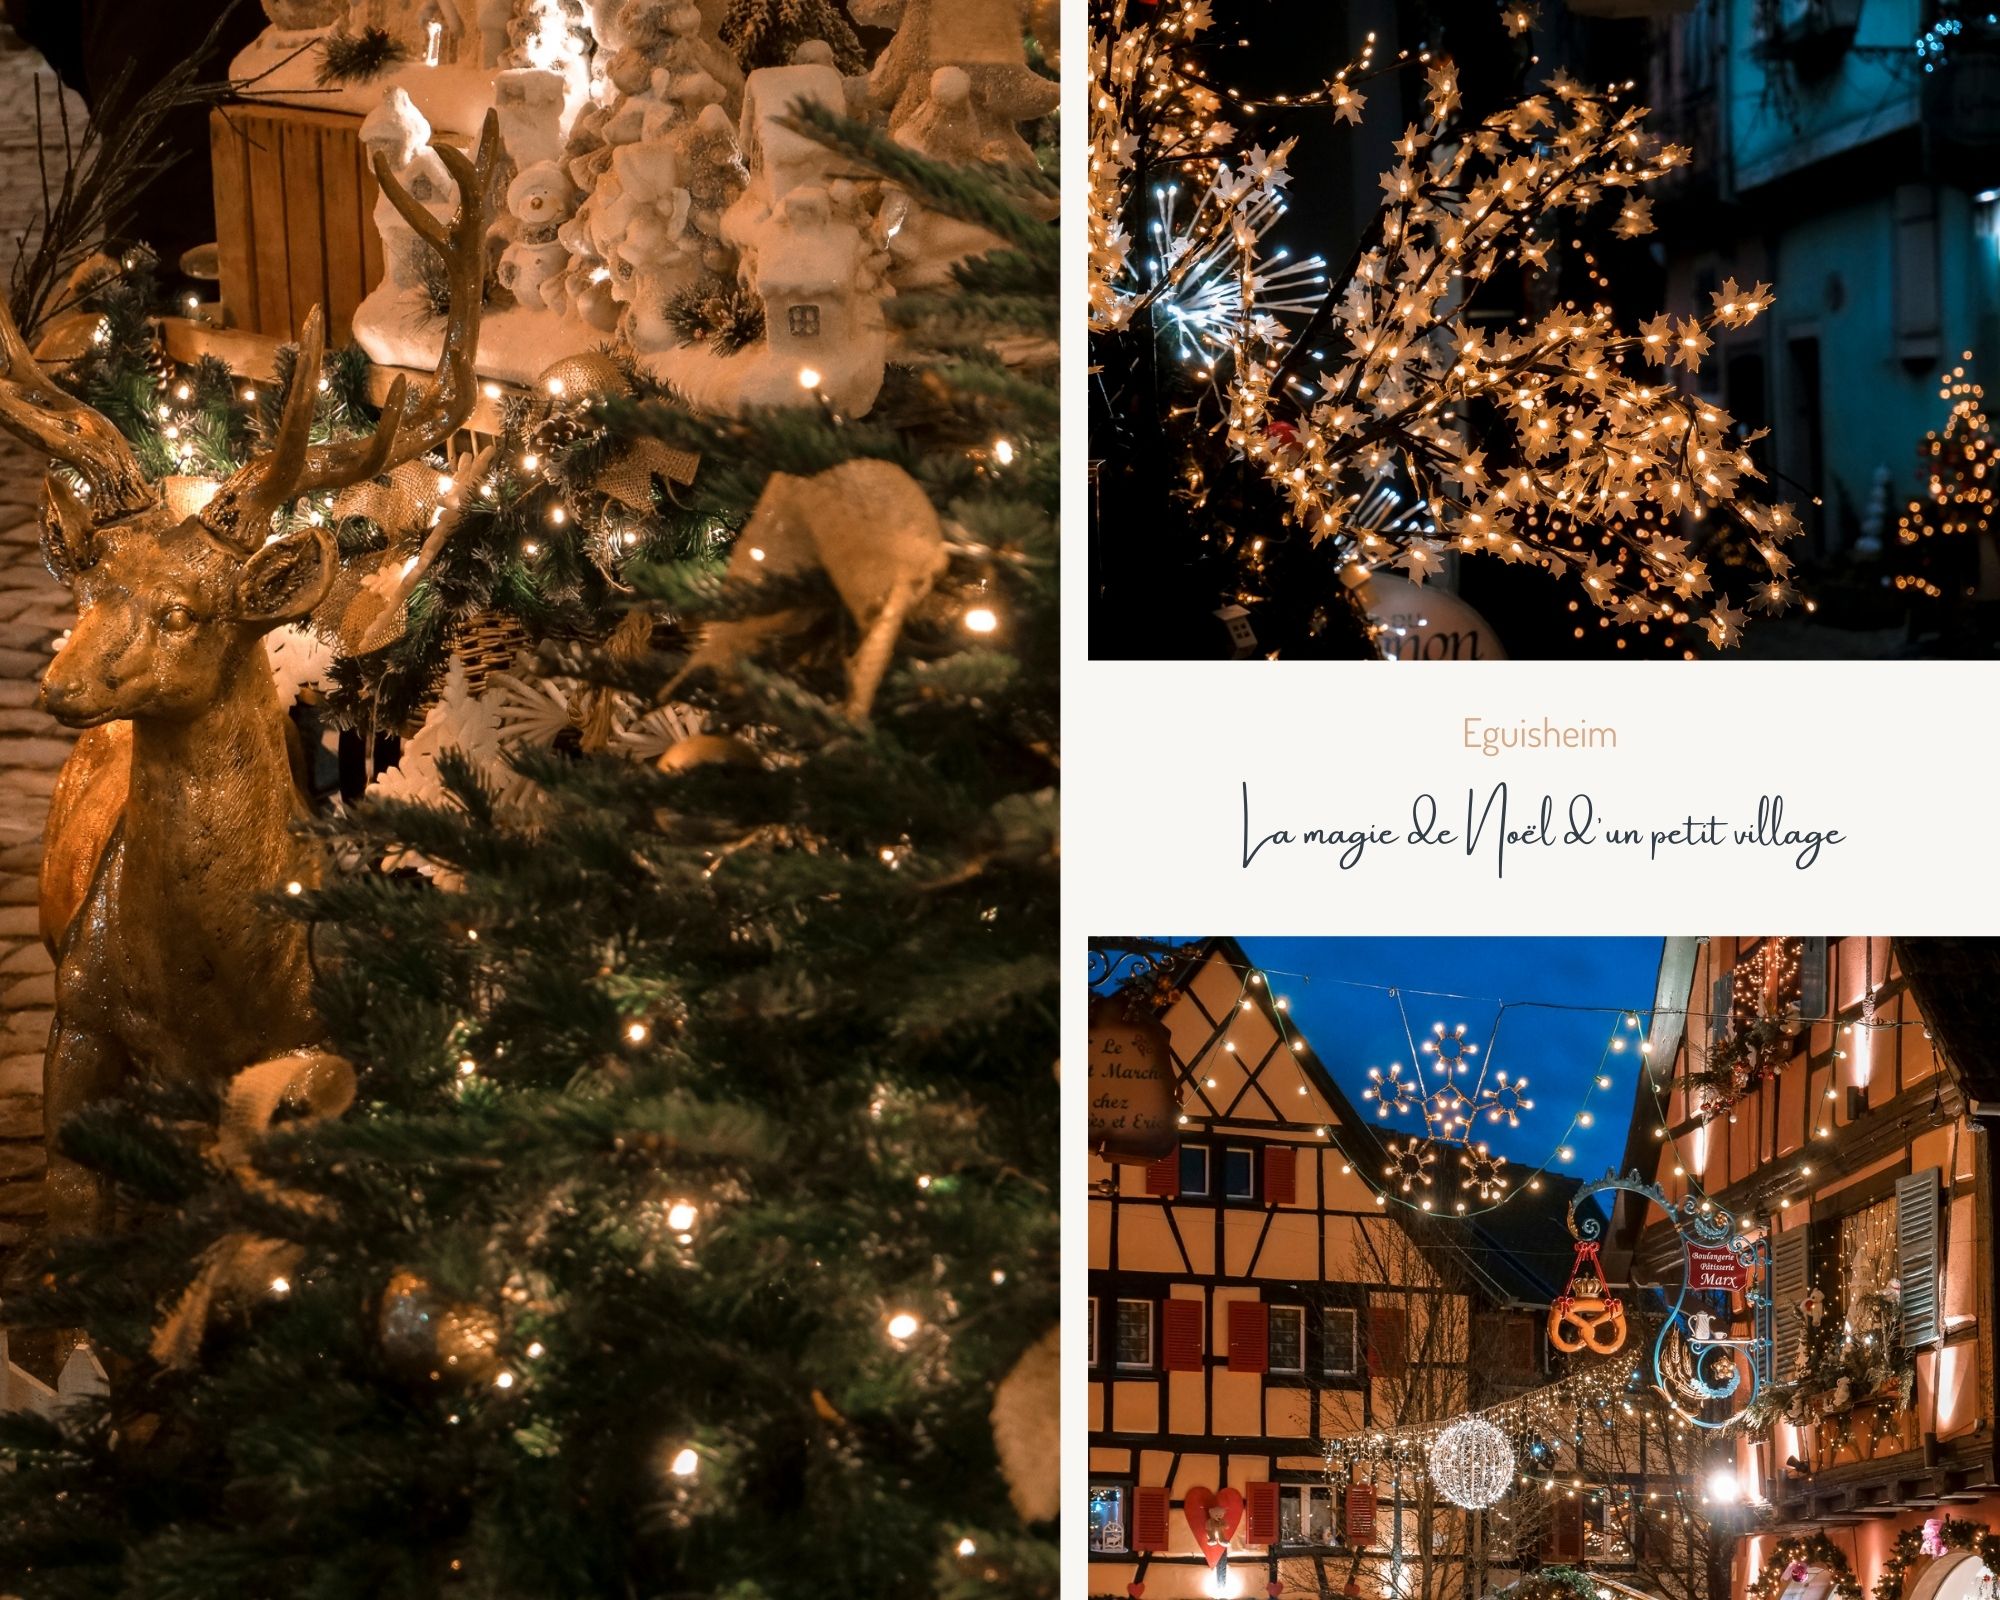 Eguisheim marché de Noël authentique en Alsace